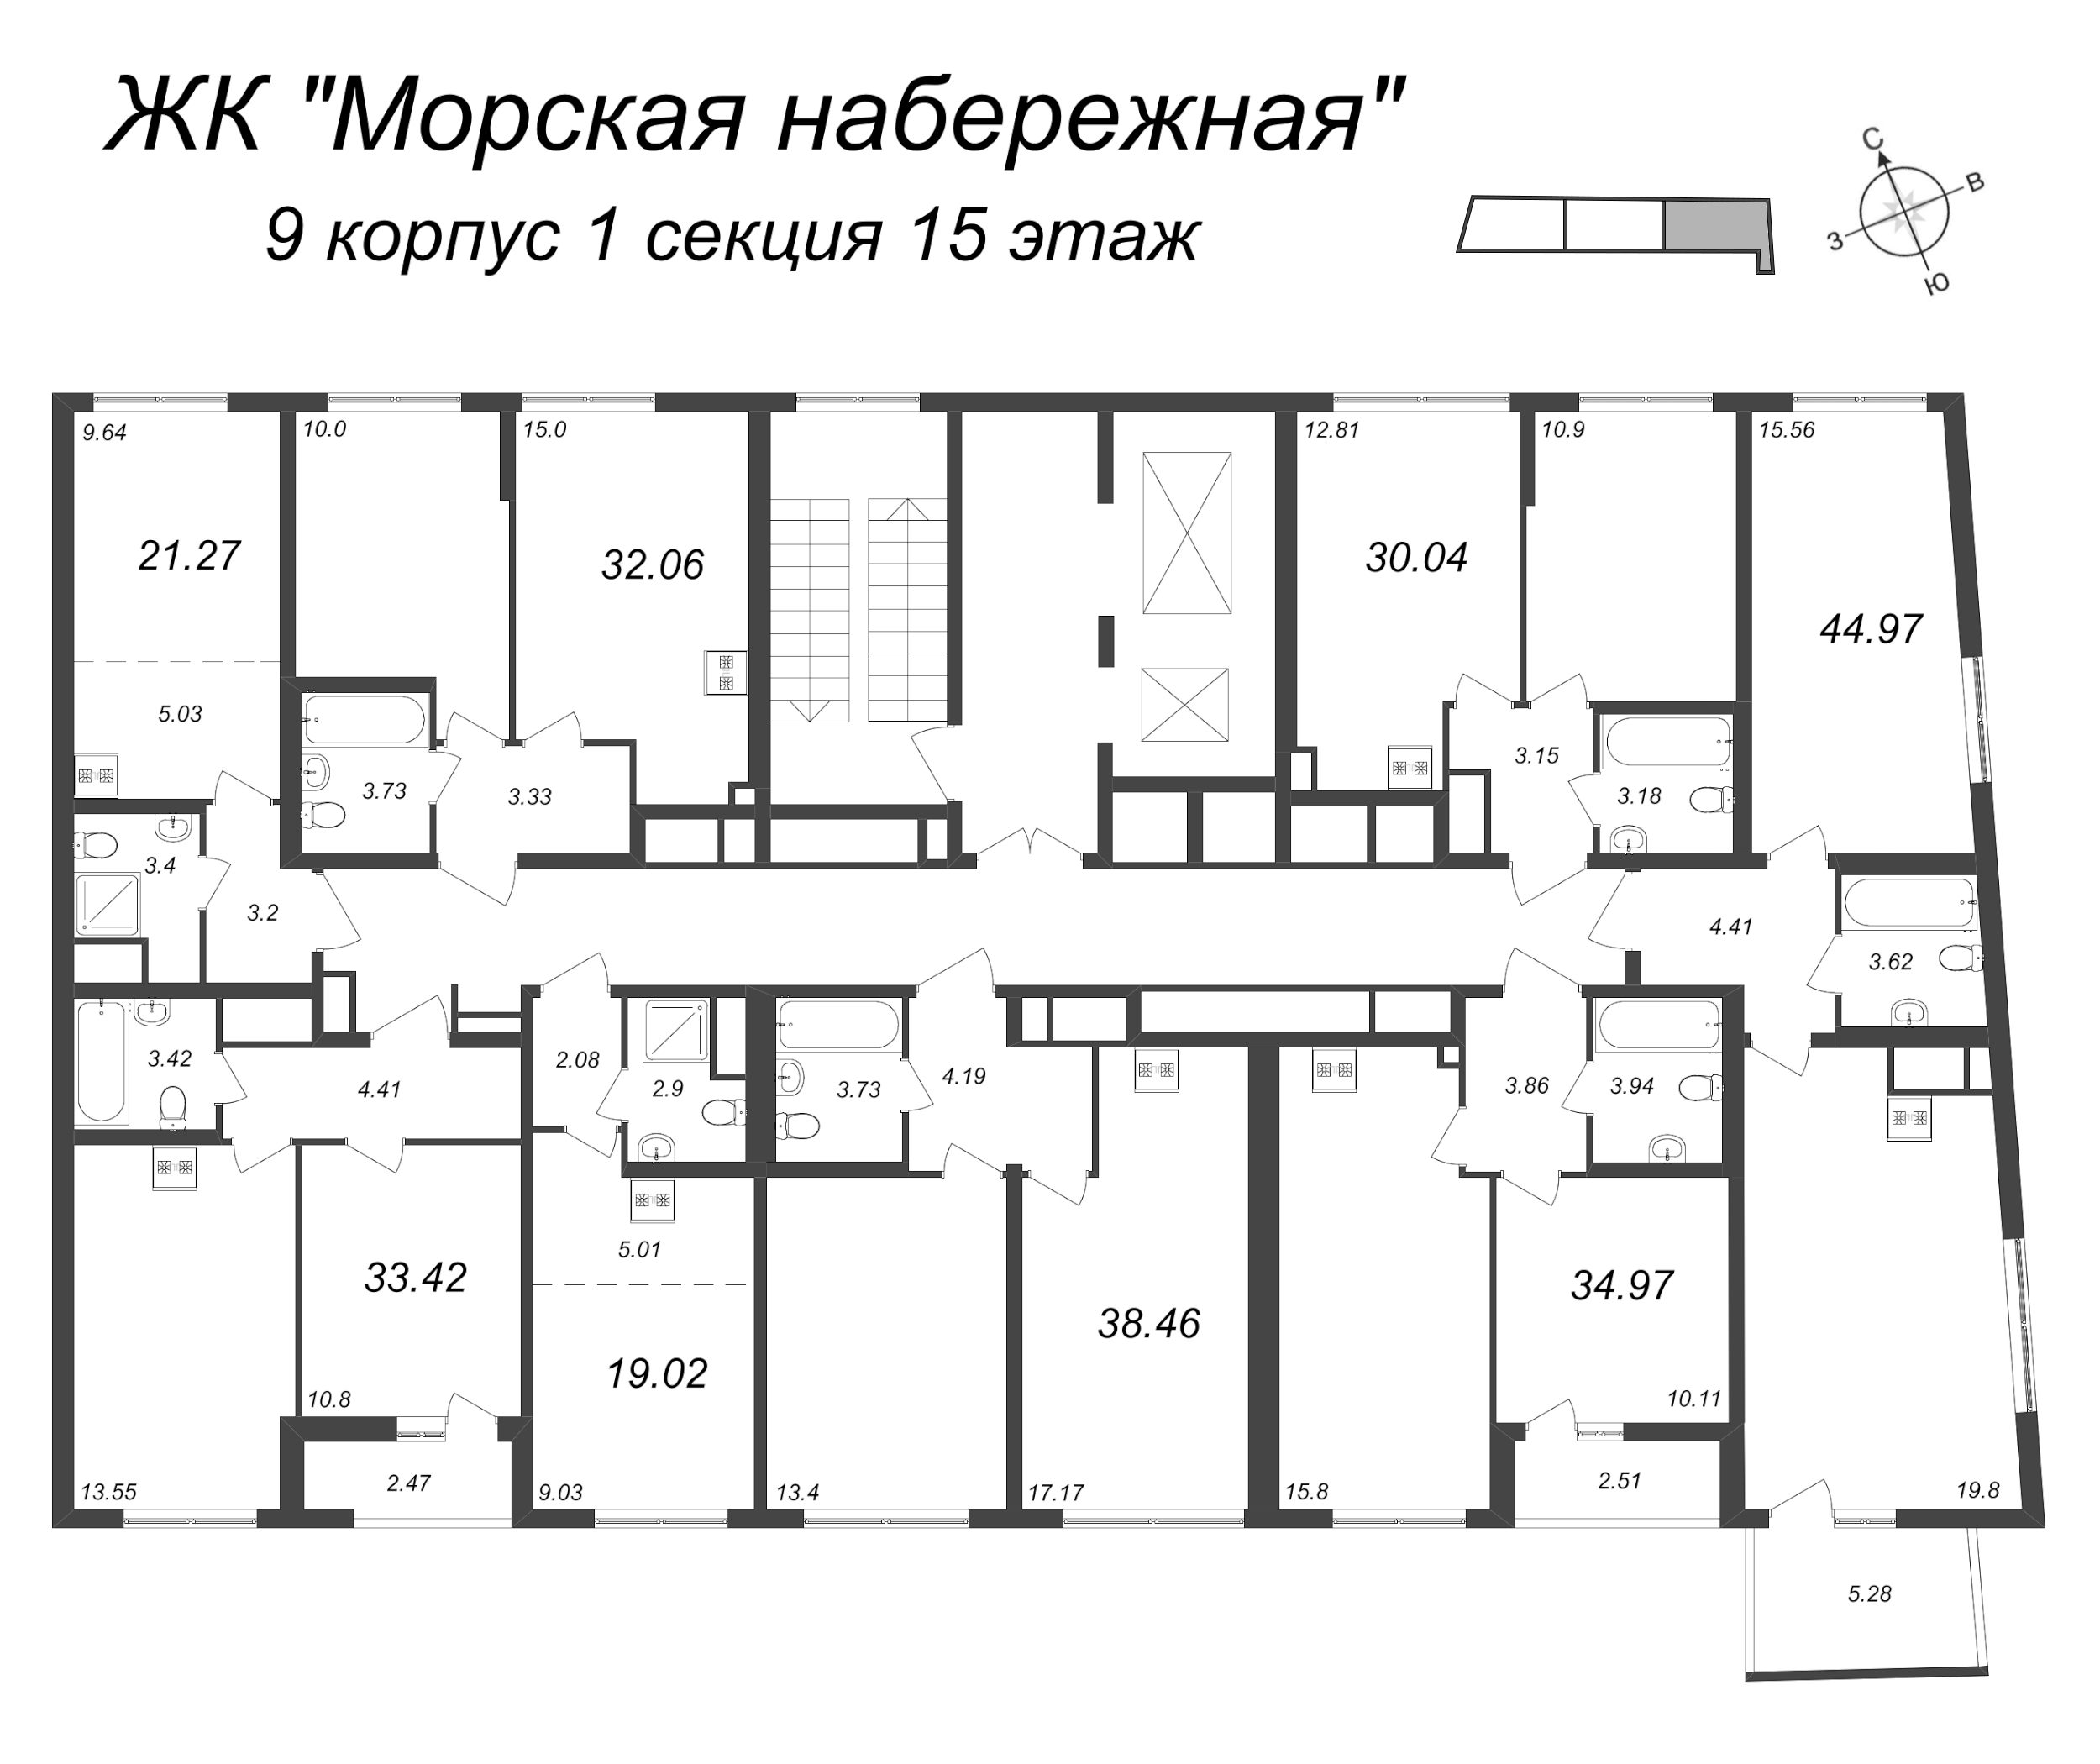 Квартира-студия, 19.02 м² в ЖК "Морская набережная" - планировка этажа